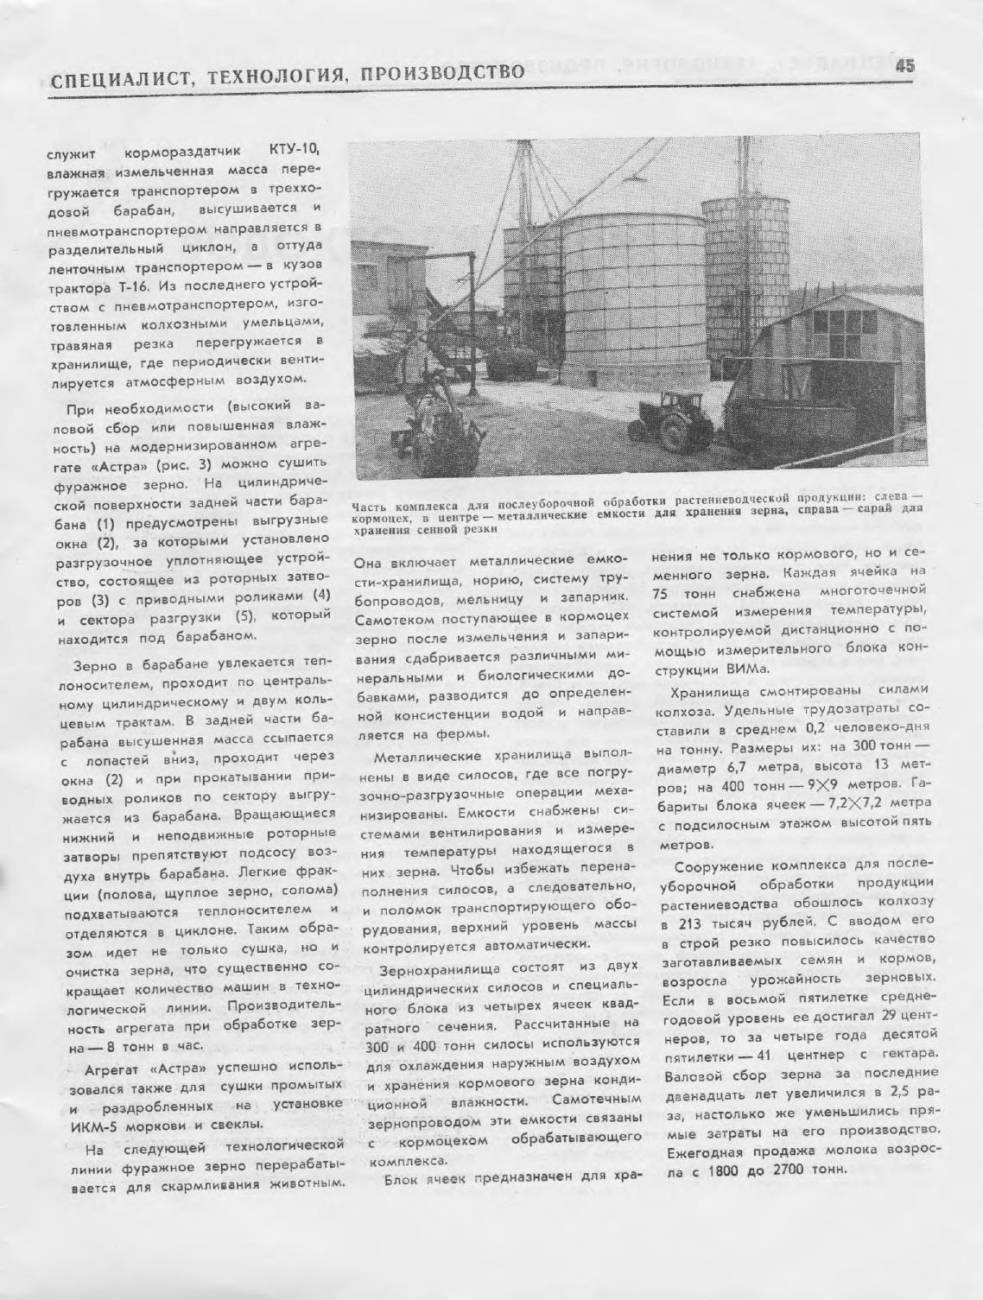 «Сельское хозяйство России»